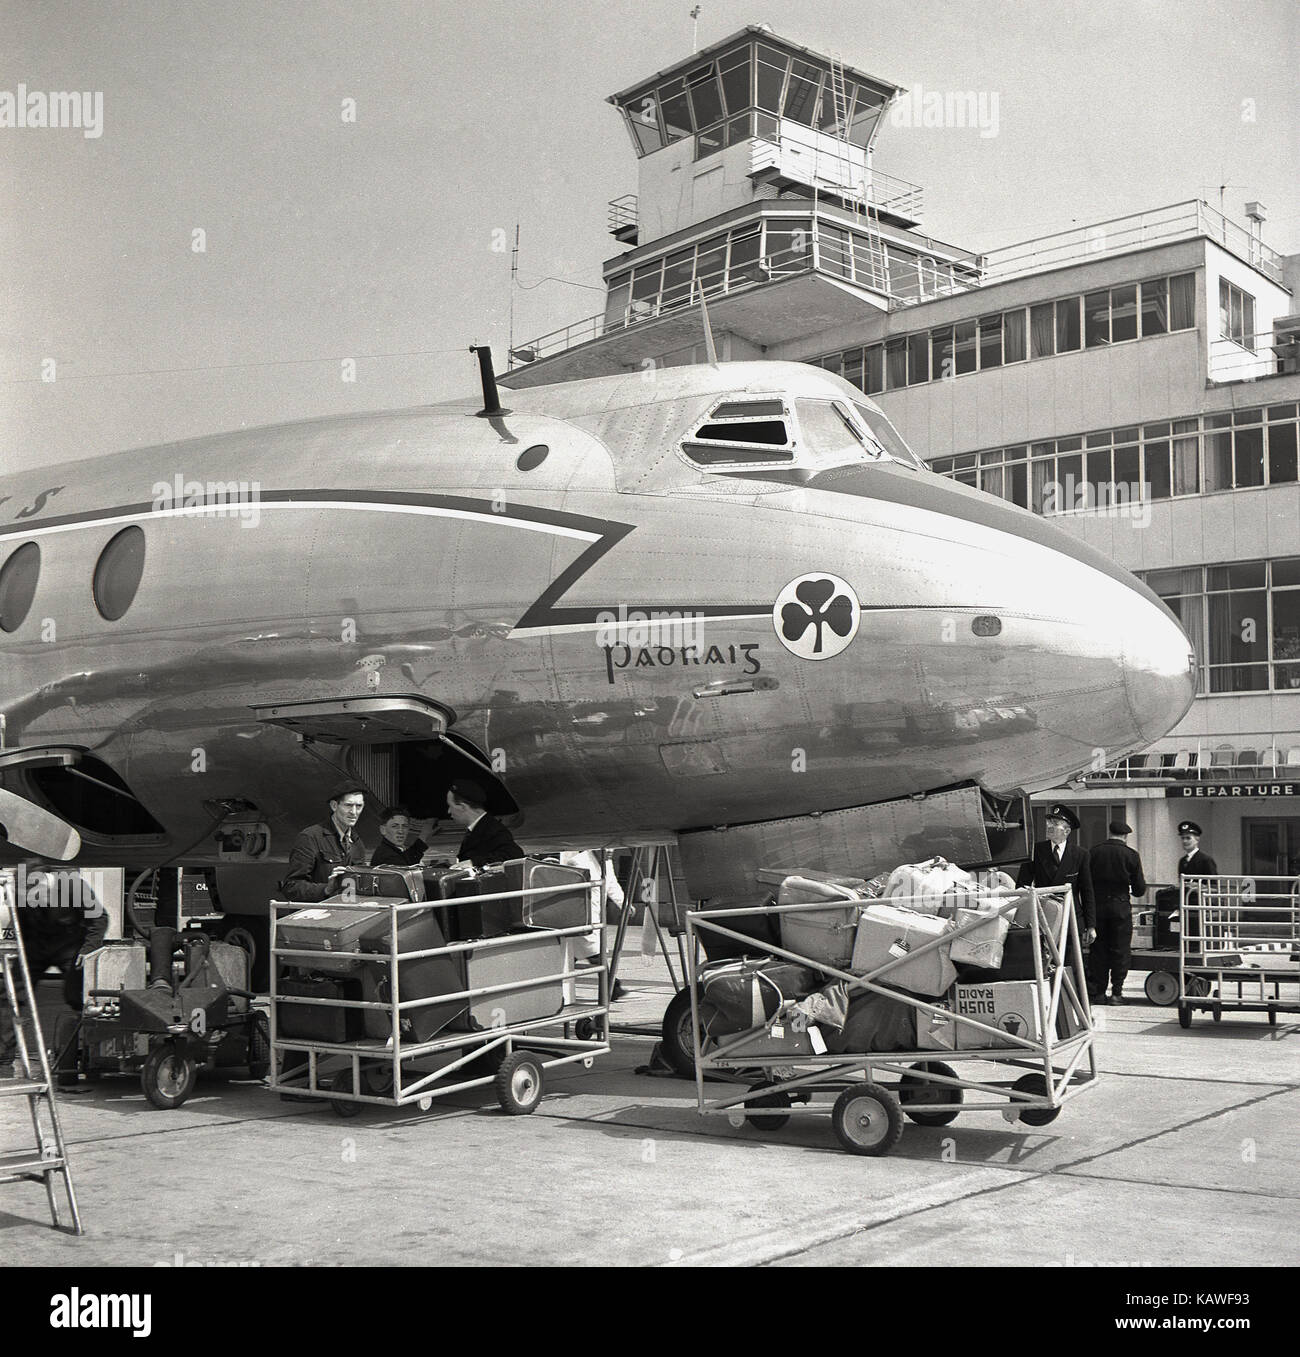 Années 1950, historique, l'aéroport de Dublin, valises et bagages d'être  chargées à bord d'un avion Aer Lingus garé juste en face de l'aérogare de  départ de la sortie, Dublin, Irlande Photo Stock -